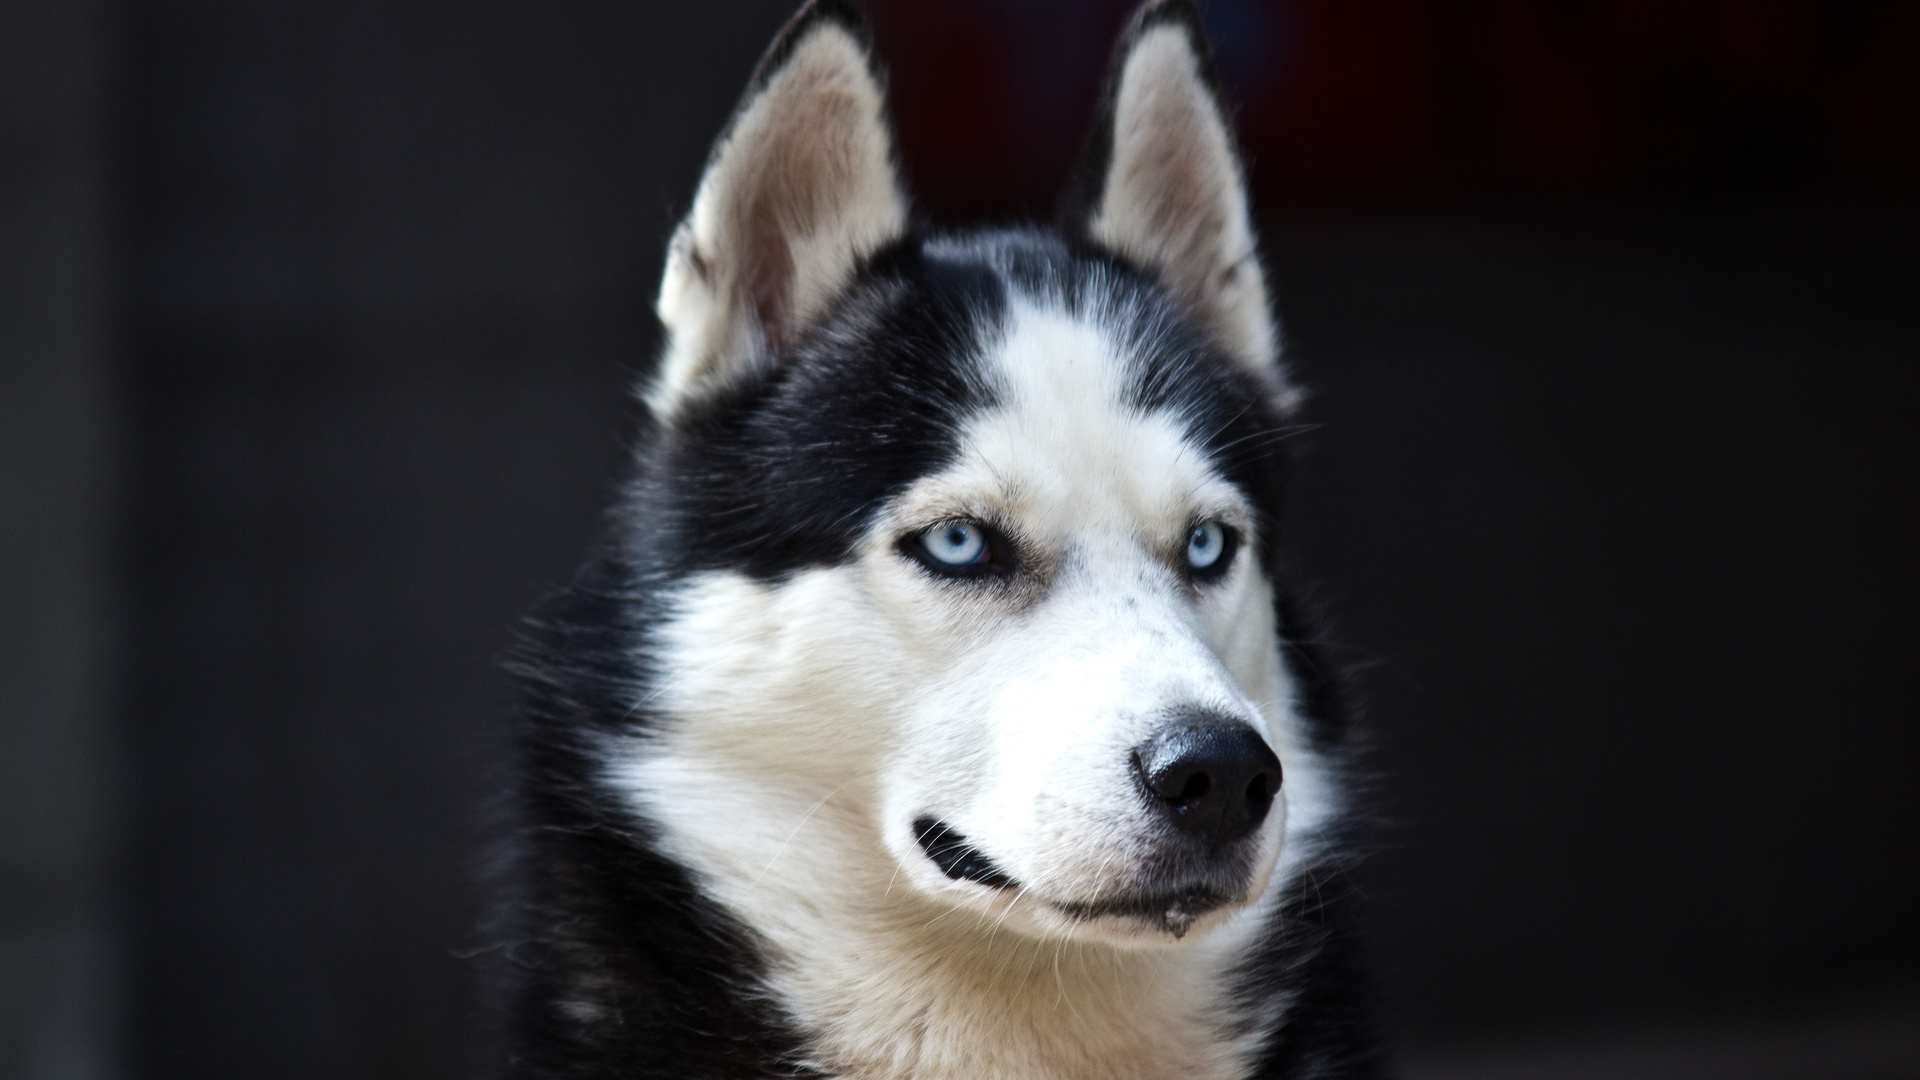 white, Husky, cute, blue eyes, black, dog, danger